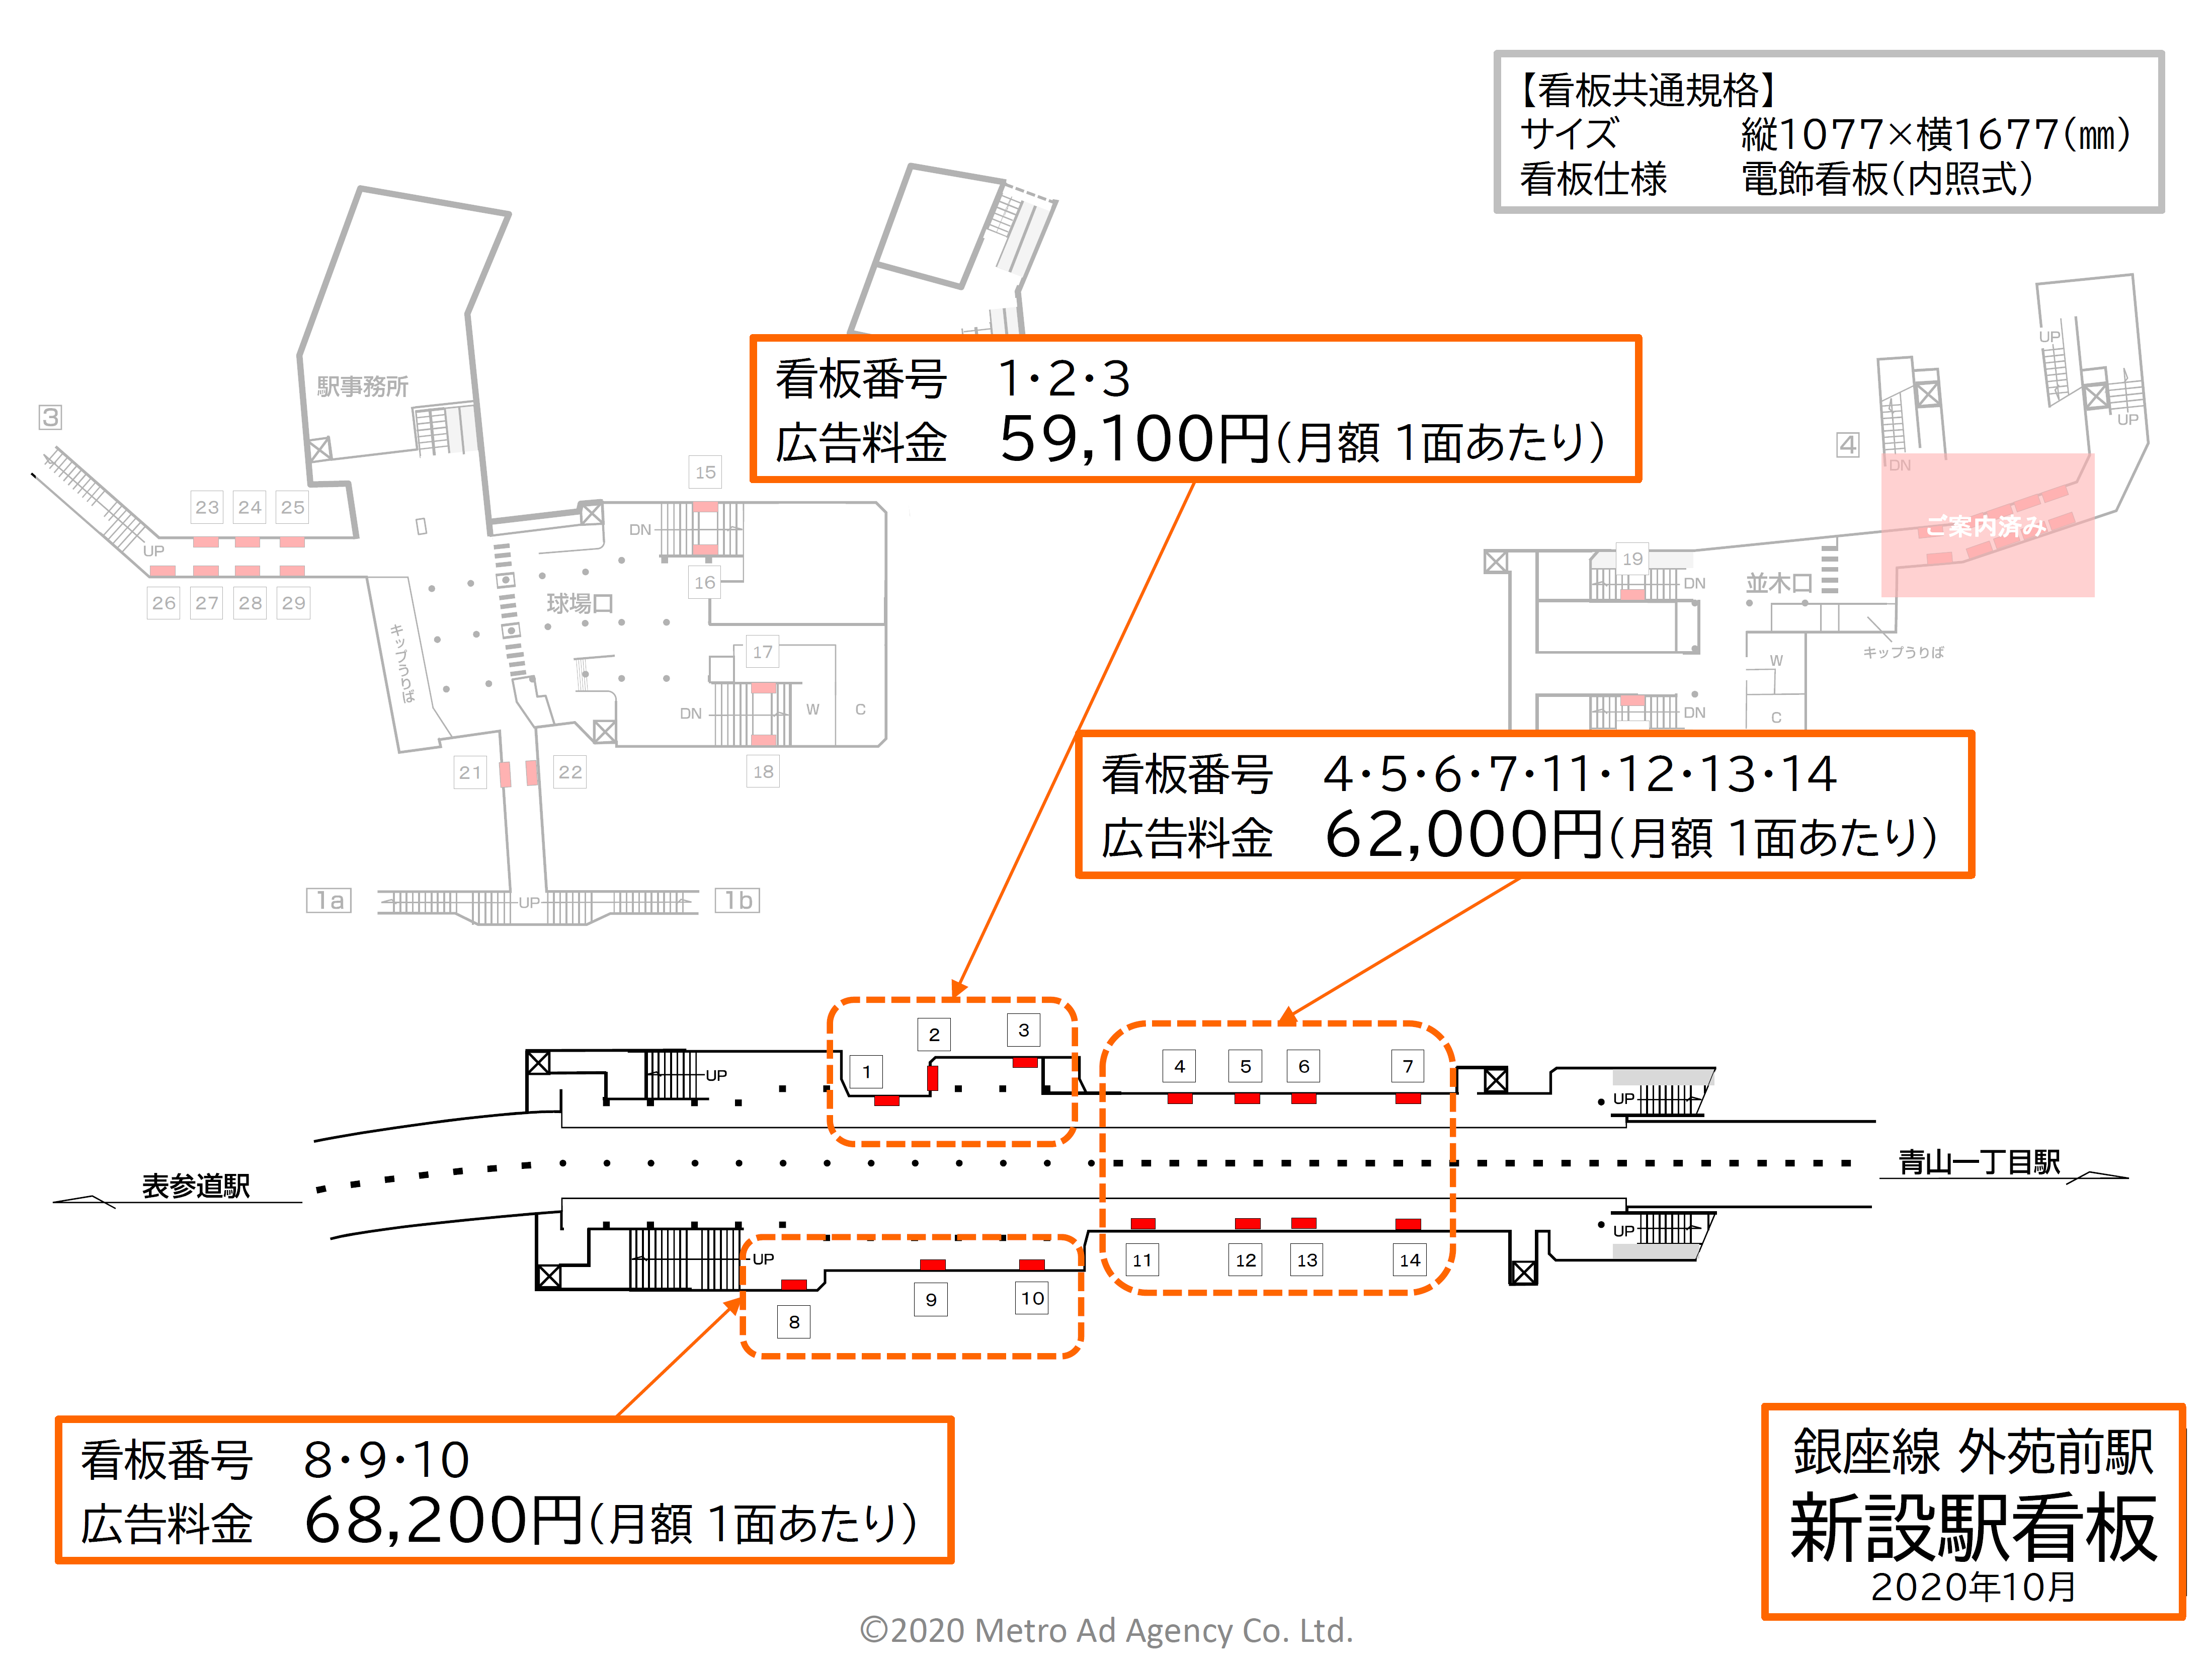 東京メトロ外苑前駅の新設駅看板の位置図です。銀座線ホームに設置されている看板の位置を印しています。